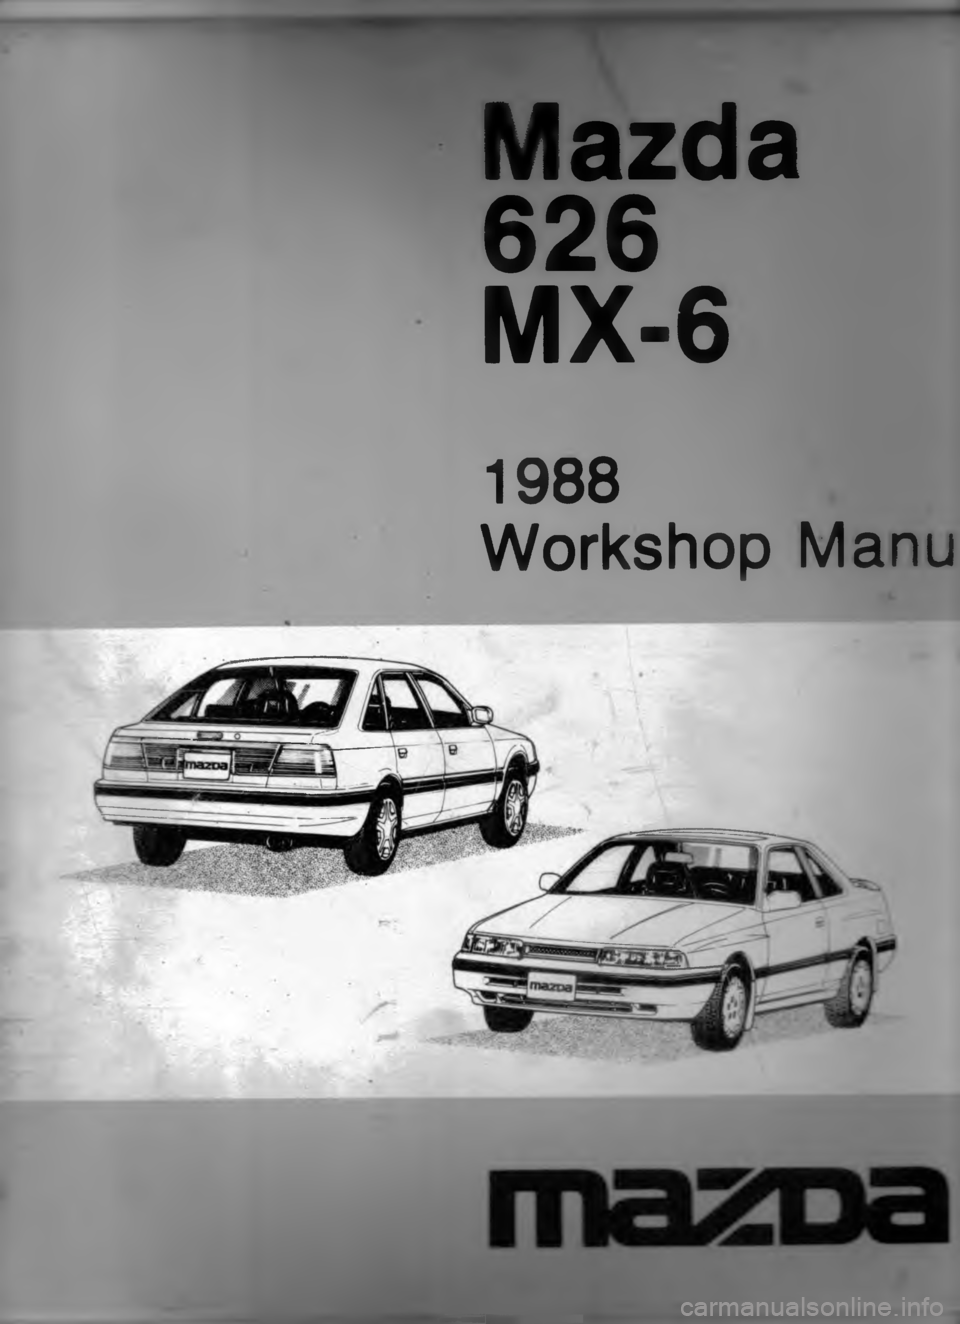 MAZDA MX-6 1988  Workshop Manual 



 